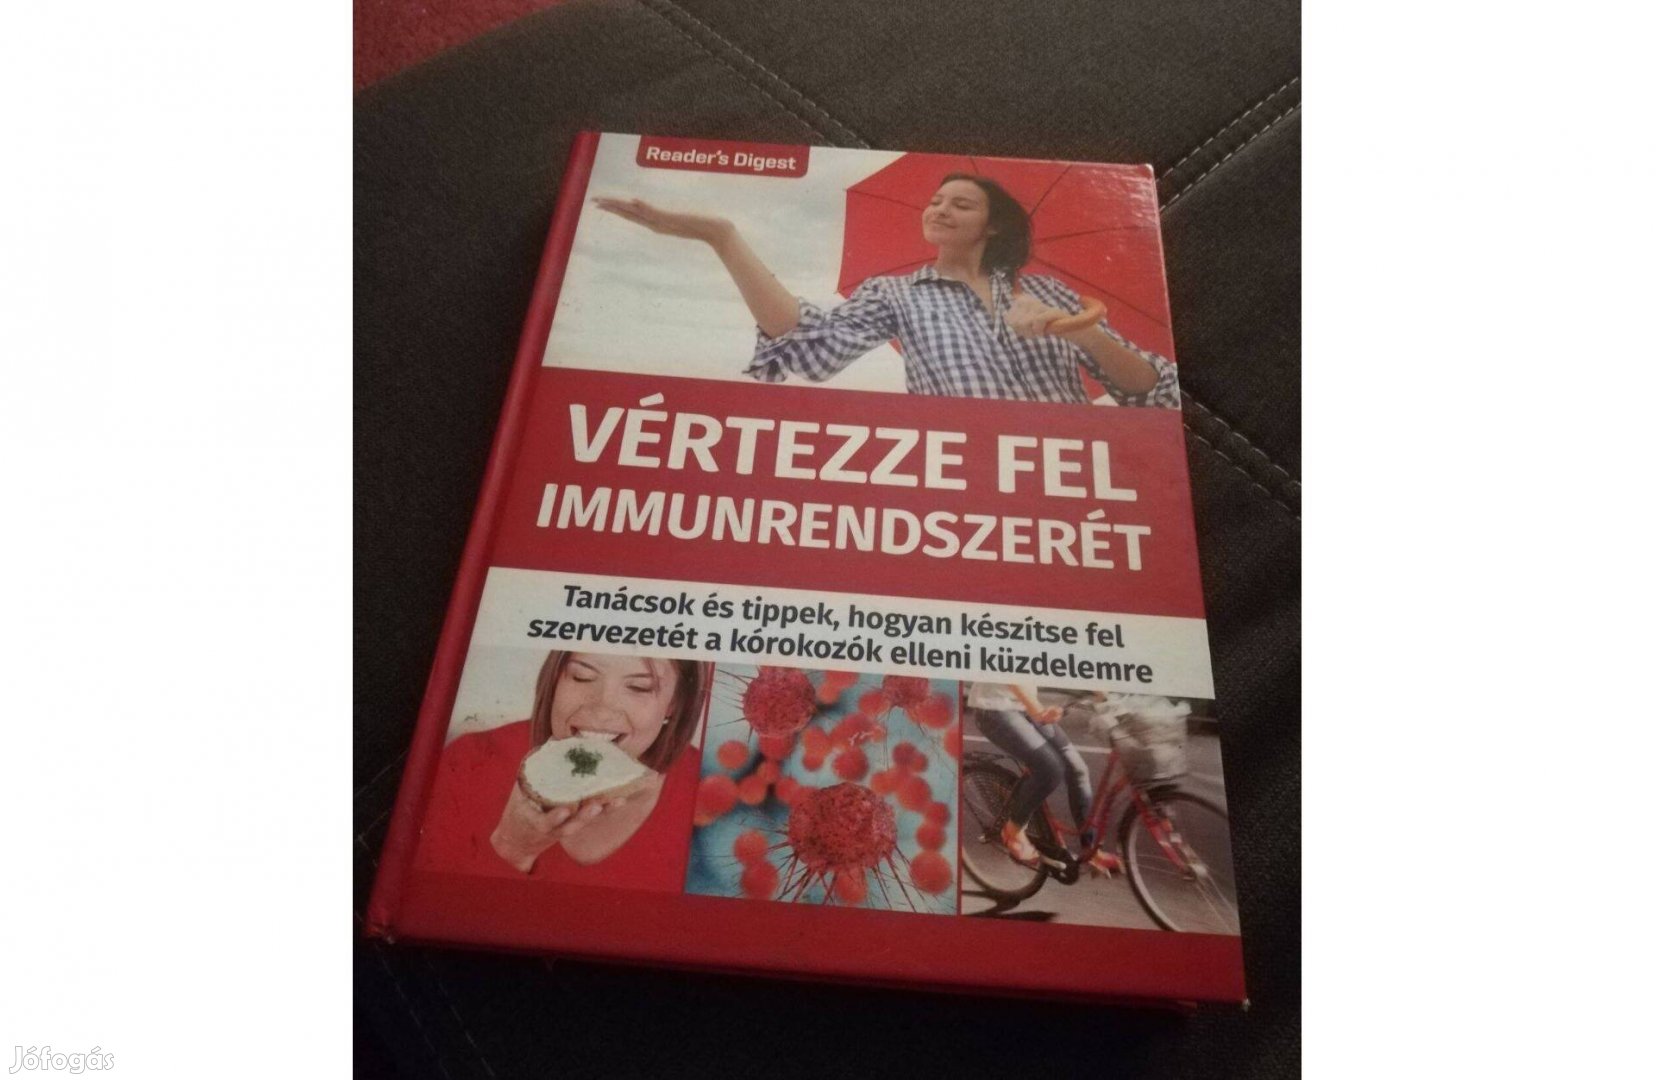 Vértezze fel immunrendszerét c. könyv 1500 forintért eladó